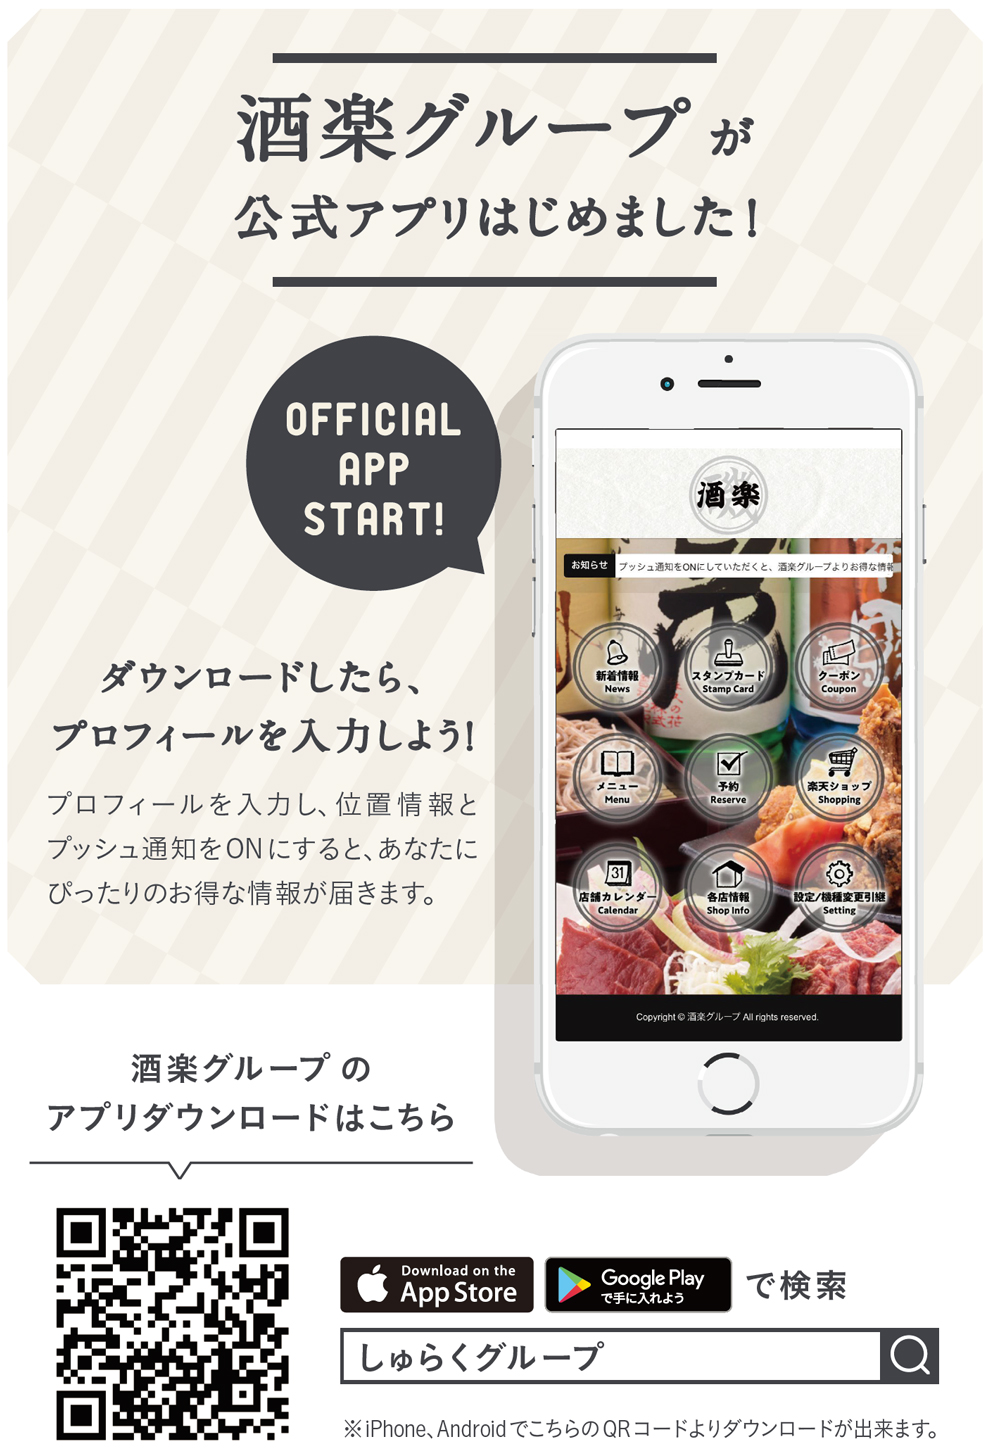 株式会社 酒楽のアプリができました 長野県松本市と長野市駅前に7店舗 郷土料理とジビエの居酒屋